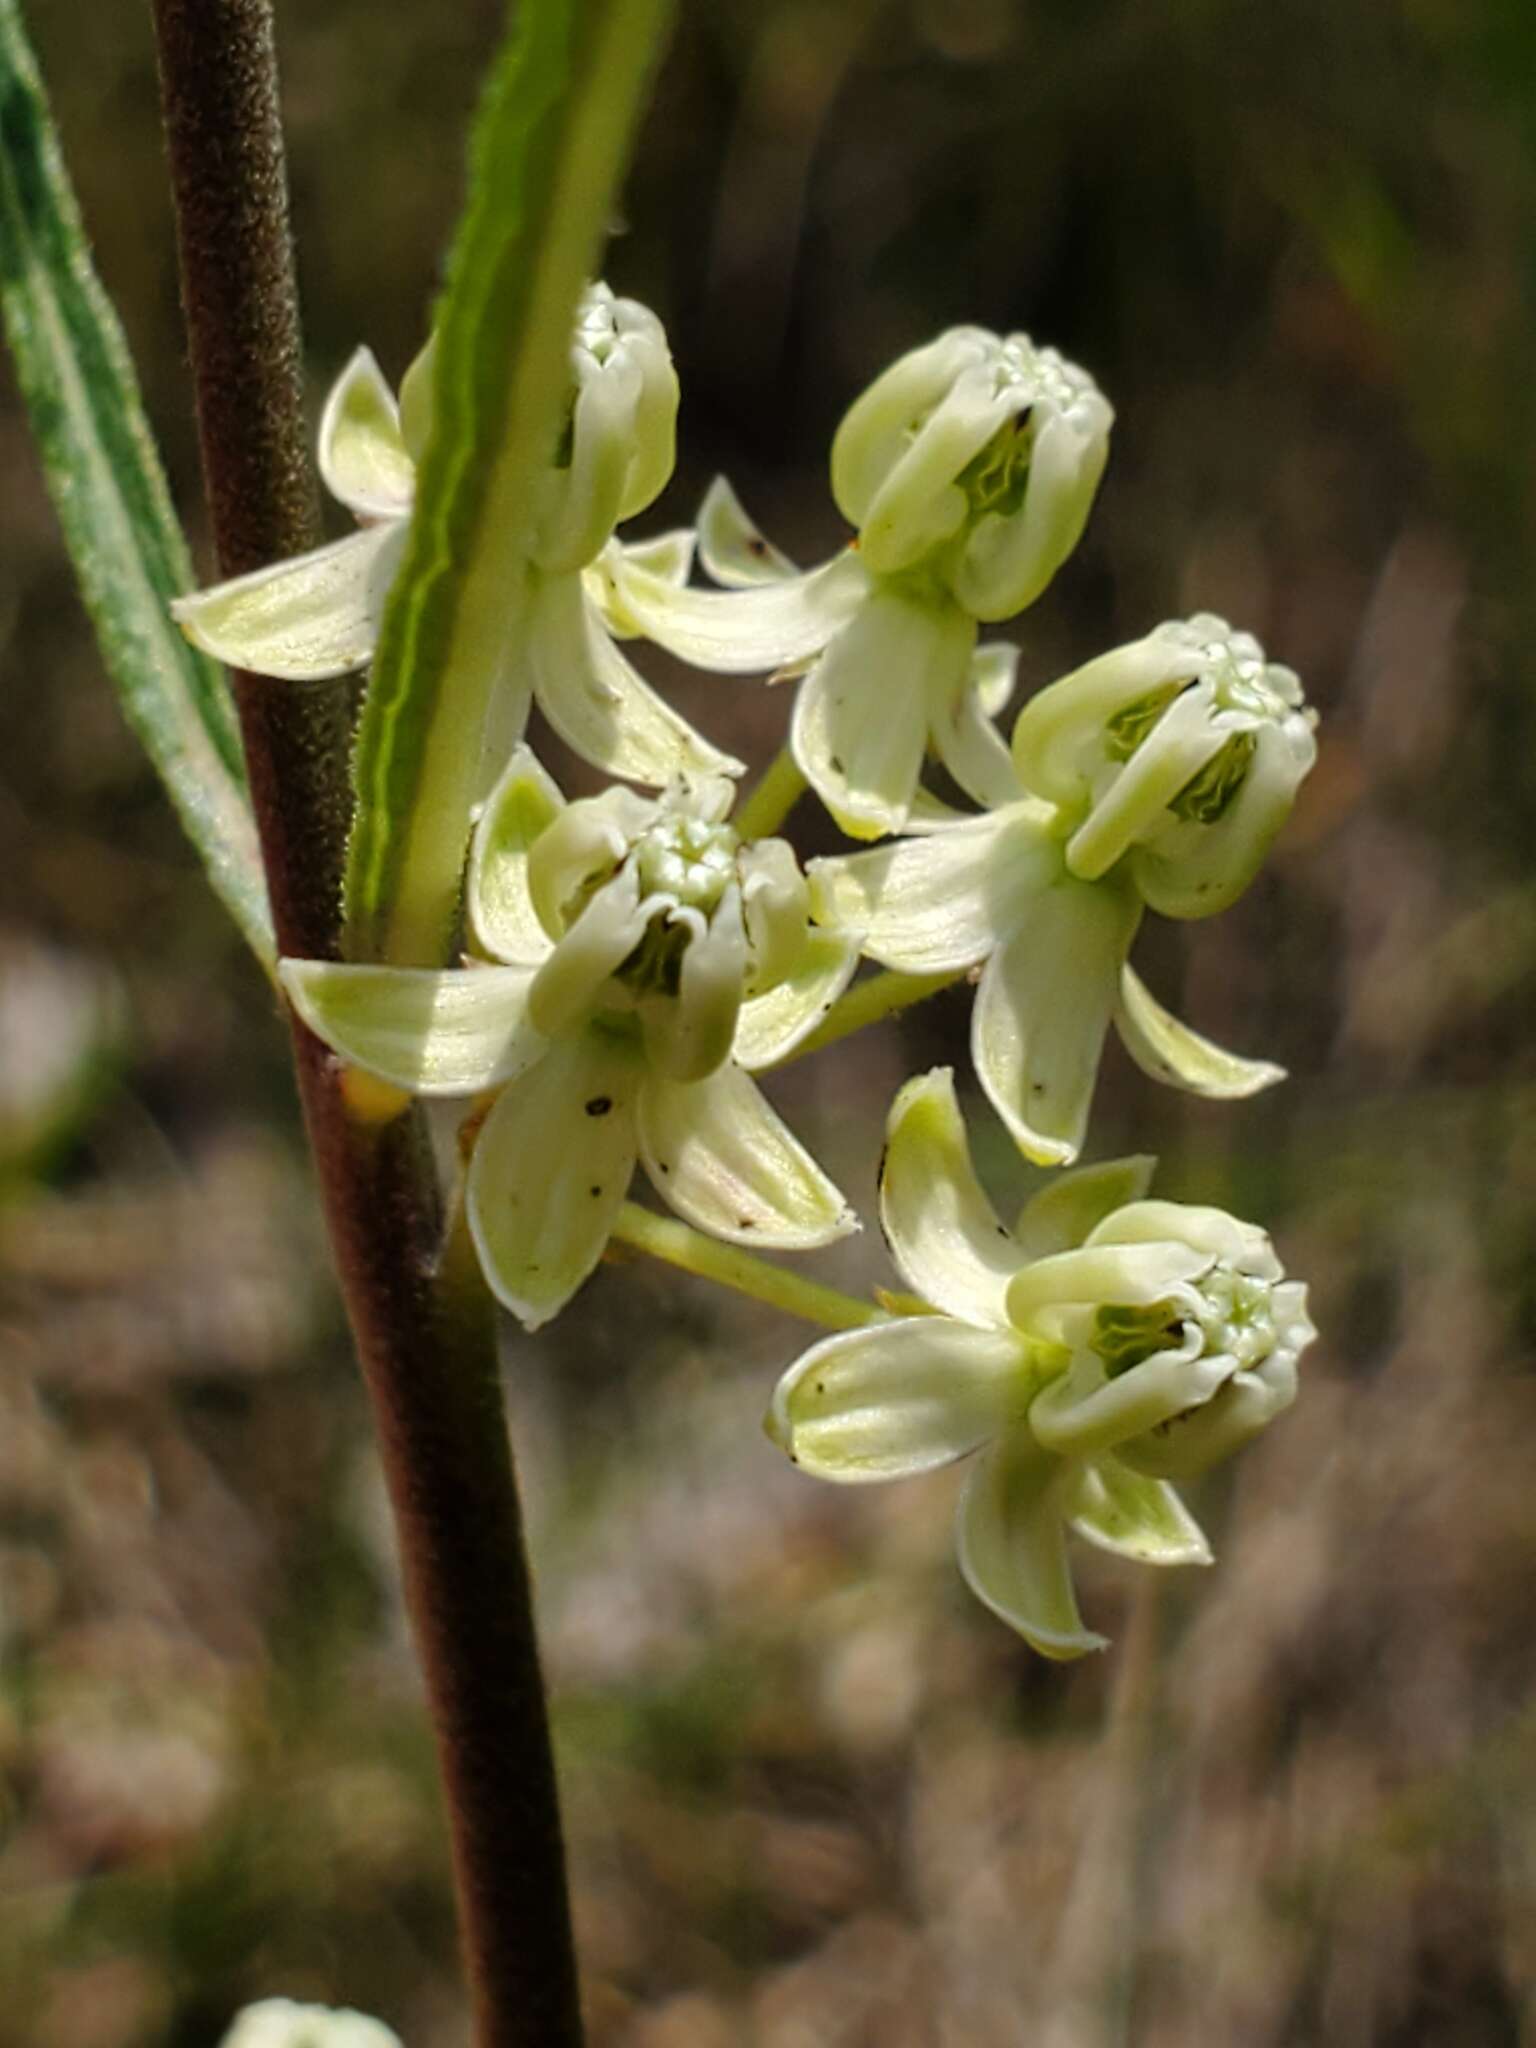 Image of slimleaf milkweed